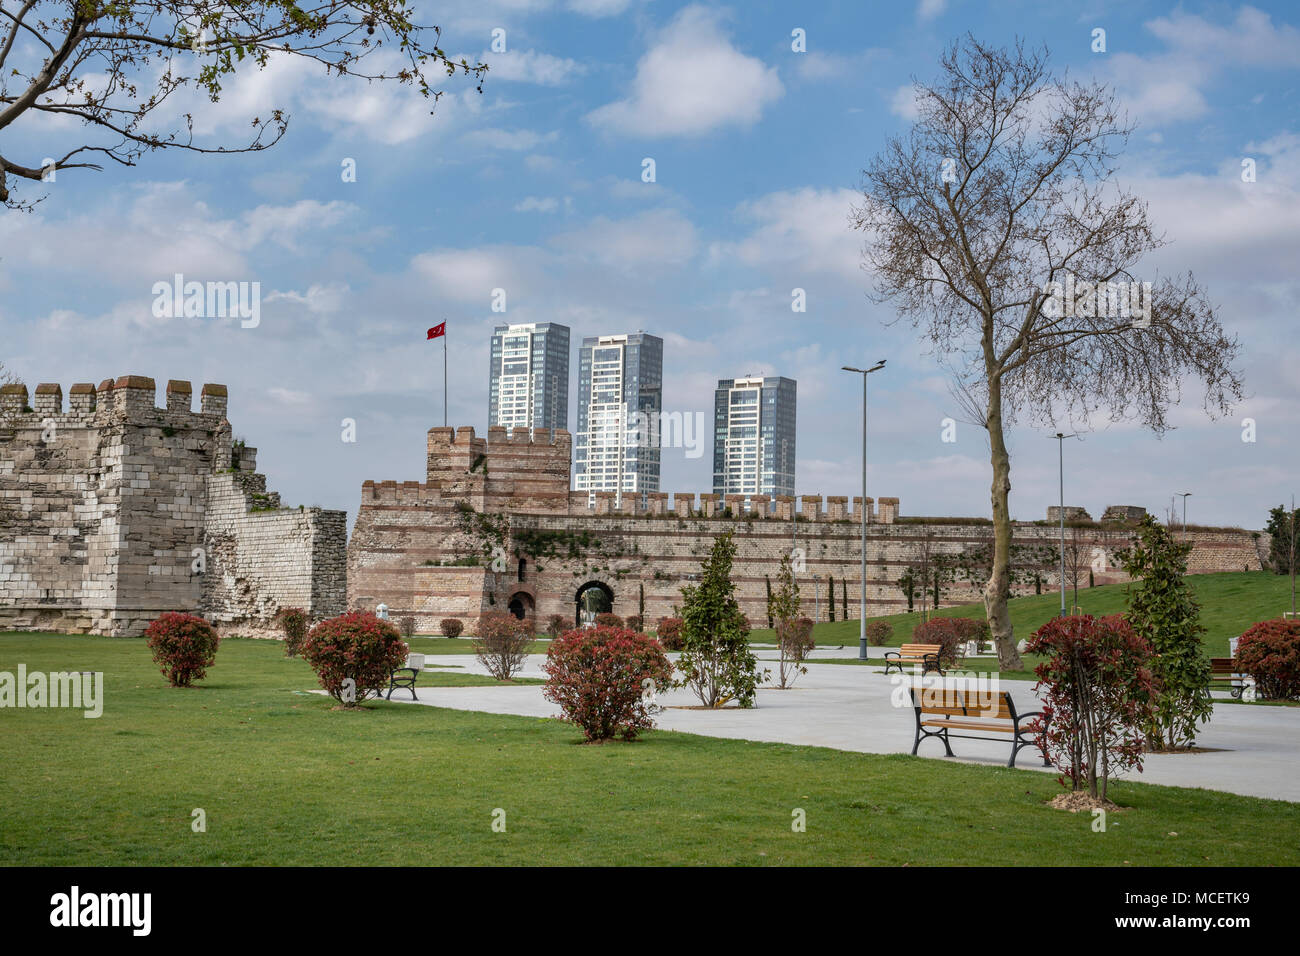 Les murs de la ville byzantine de Yedikule quartier dans le district de Fatih, à Istanbul. Banque D'Images